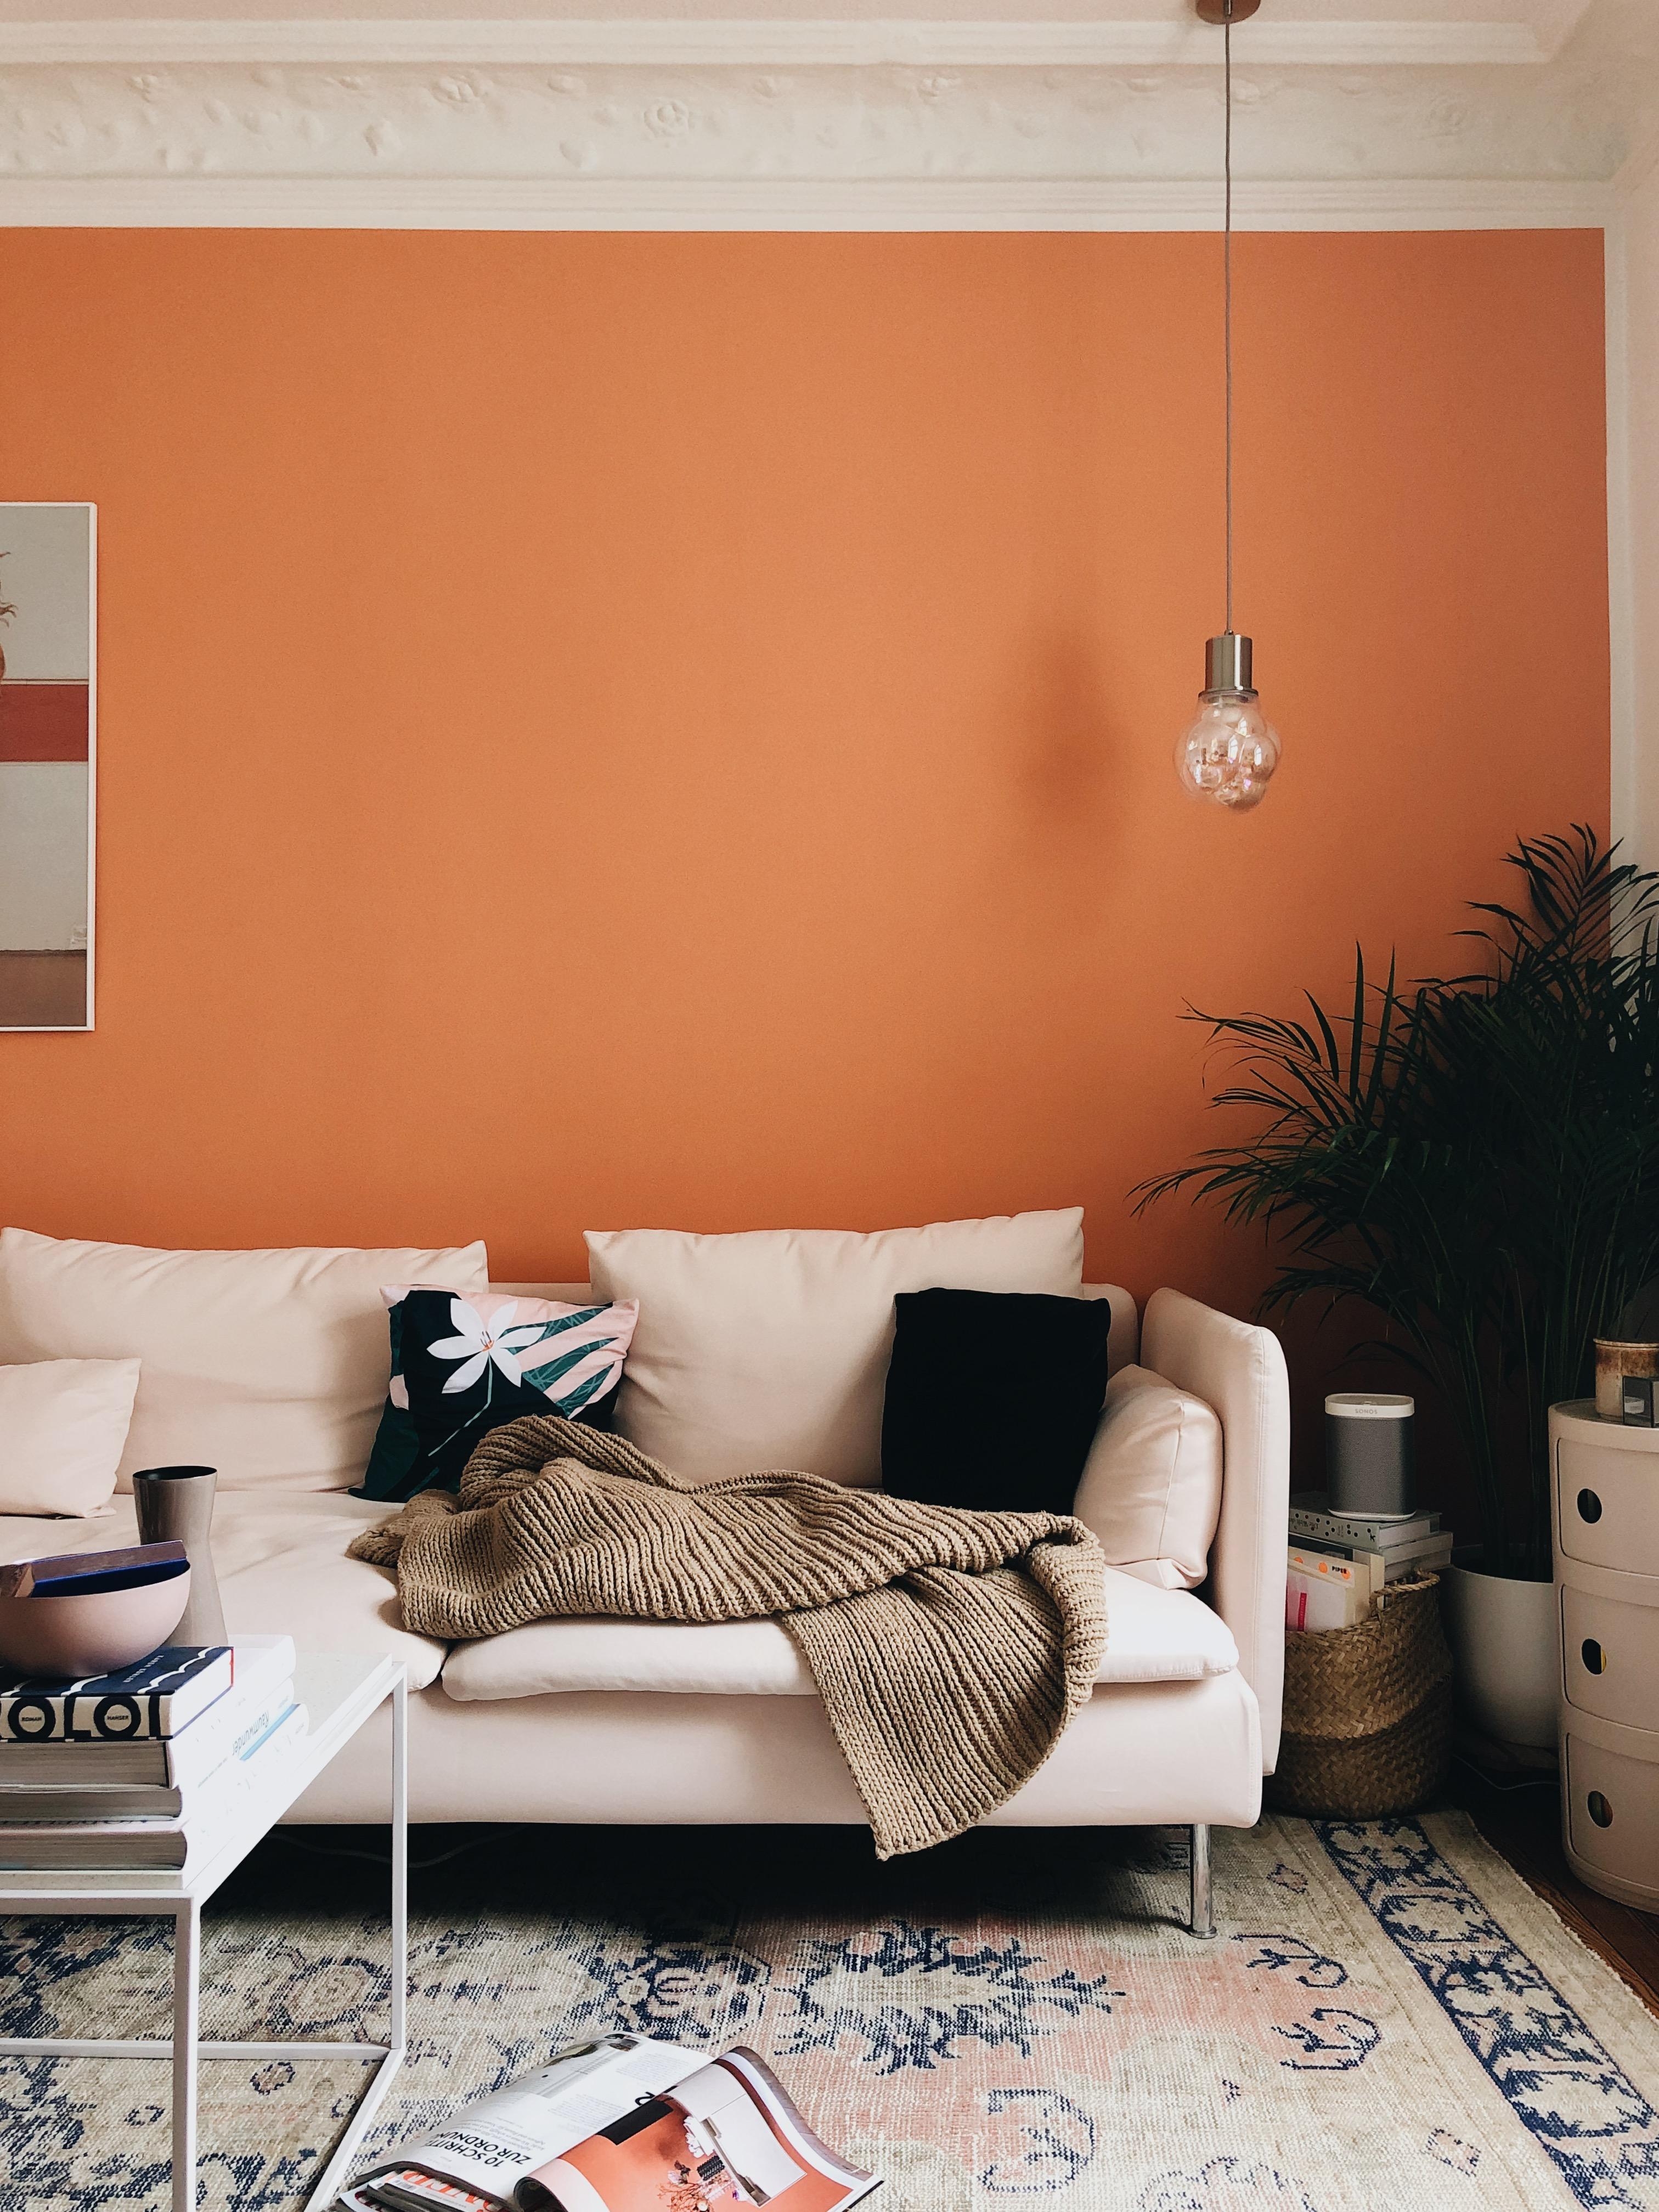 Überbleibsel vom Lese-Sonntag.
#wohnzimmer #livingroom #colorcrush #wandfarbe #orange #couch #sofa #cozycorner